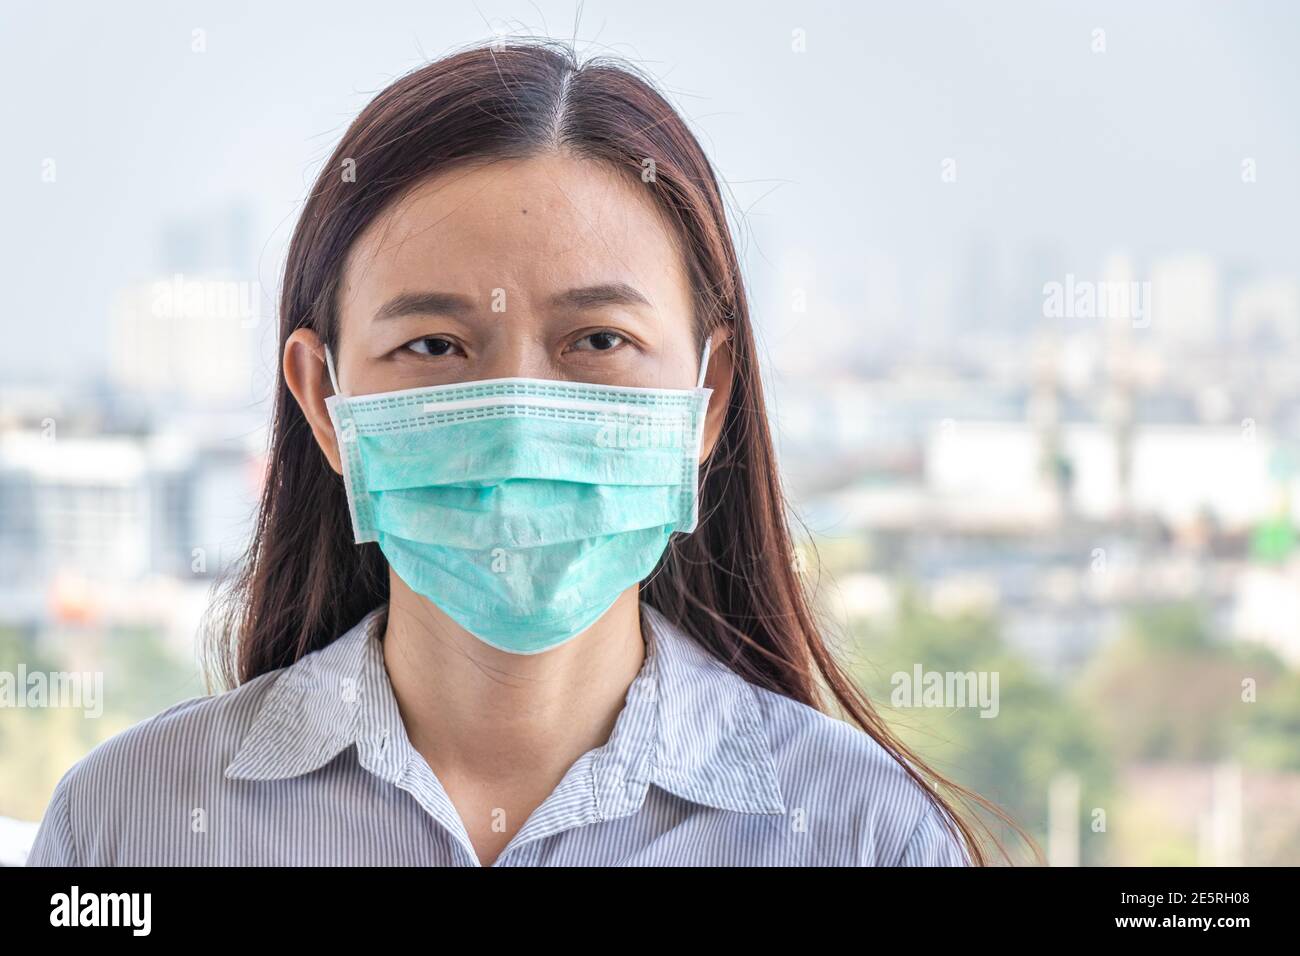 Asiatische Frau trägt hygienische schützen Gesichtsmaske COVID-19, Coronavirus-Infektion zu verhindern, während außerhalb von zu Hause während covid Virus-Epidemie Übertragung Stockfoto